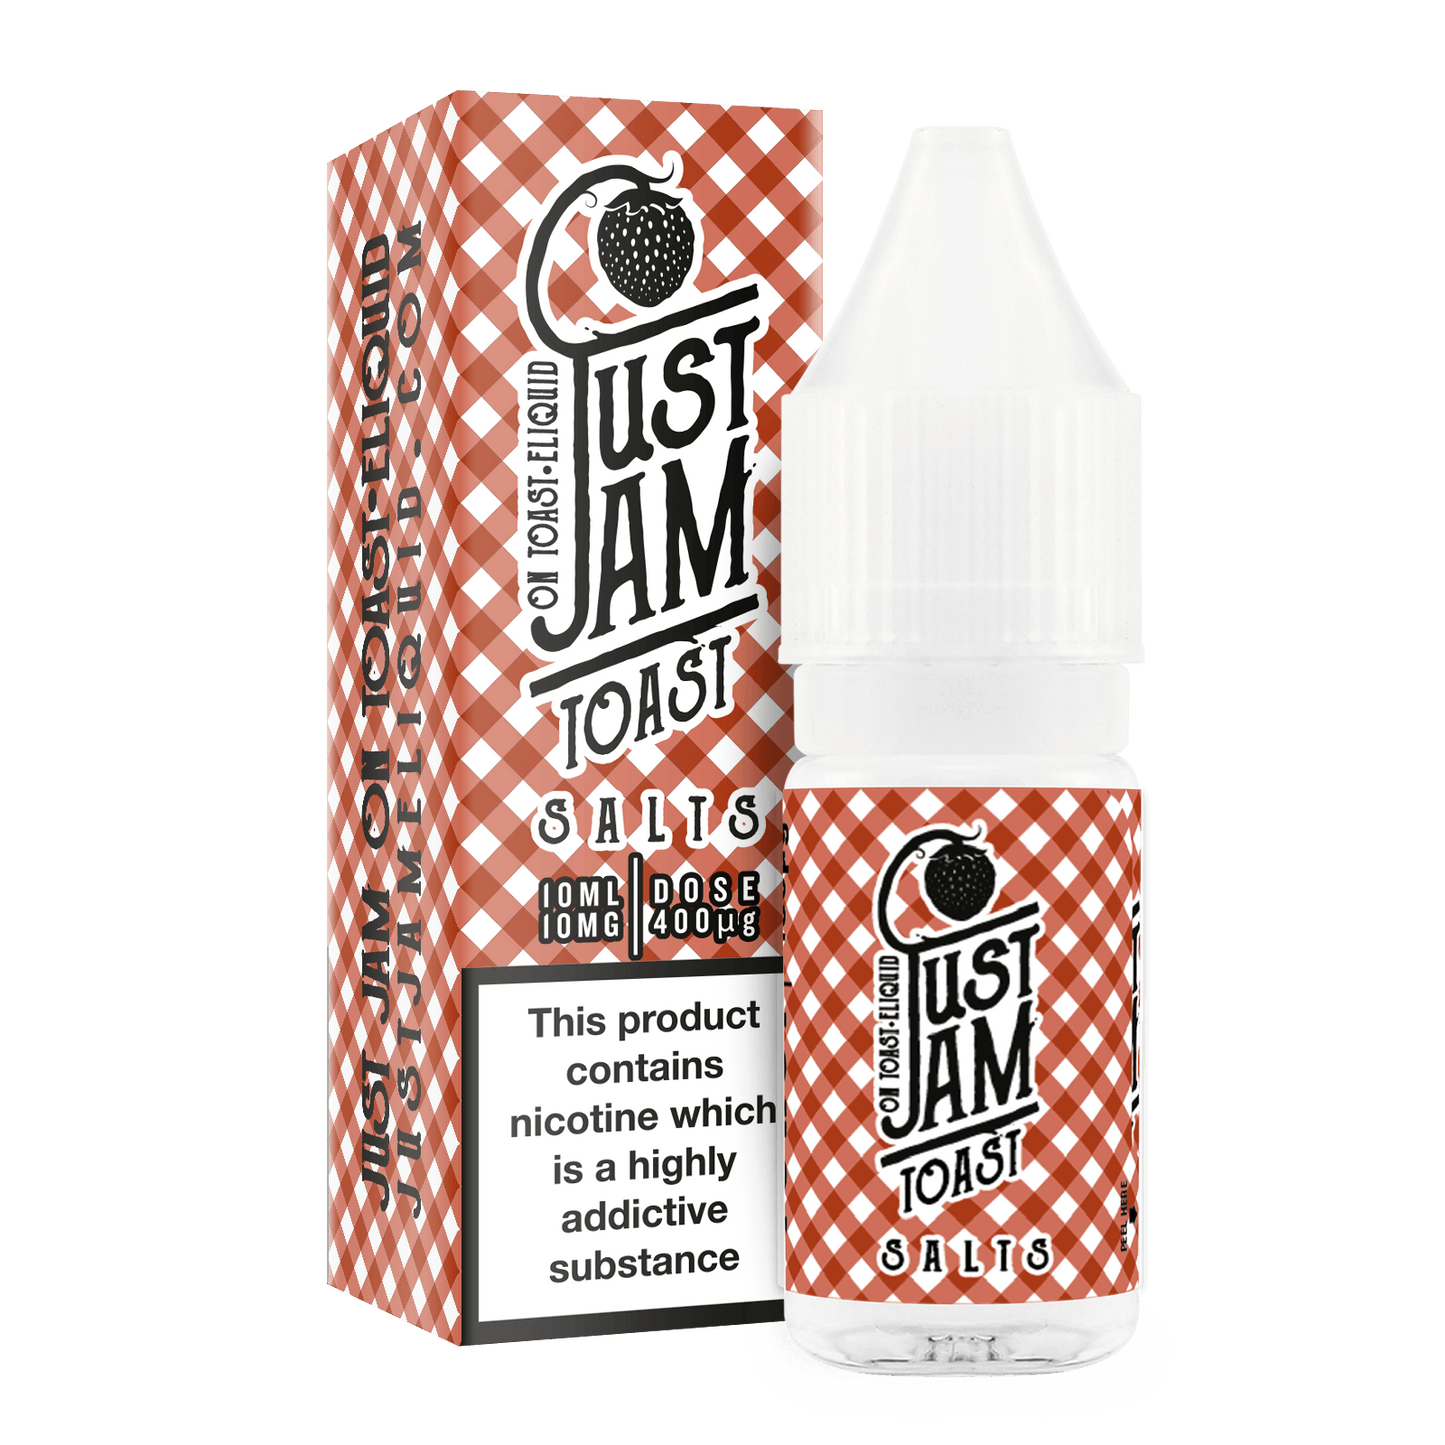 Just Jam Toast 10ml Nicotine Salt - The Ace Of Vapez